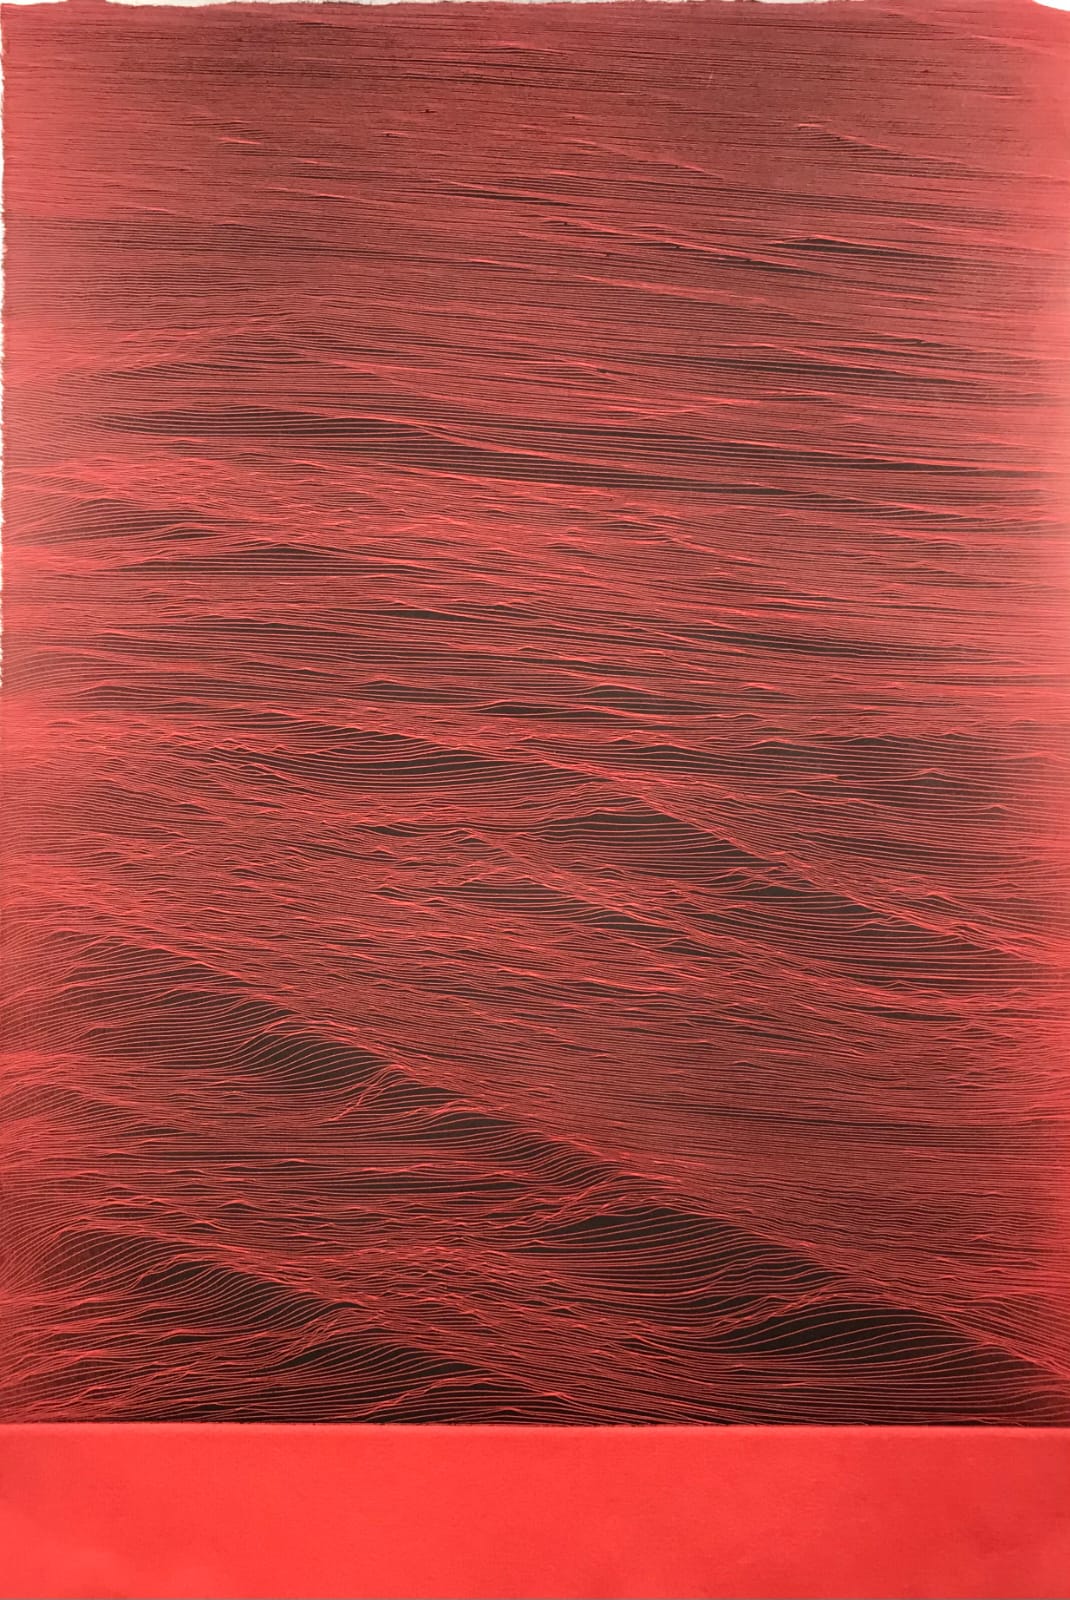 JE Mar Negro Rojo 2022 Ed PA.25 37x24 cm Etching on Awagami Mingueishi paper Pigment Gallery Galería de Arte en Barcelona Juan Escudero